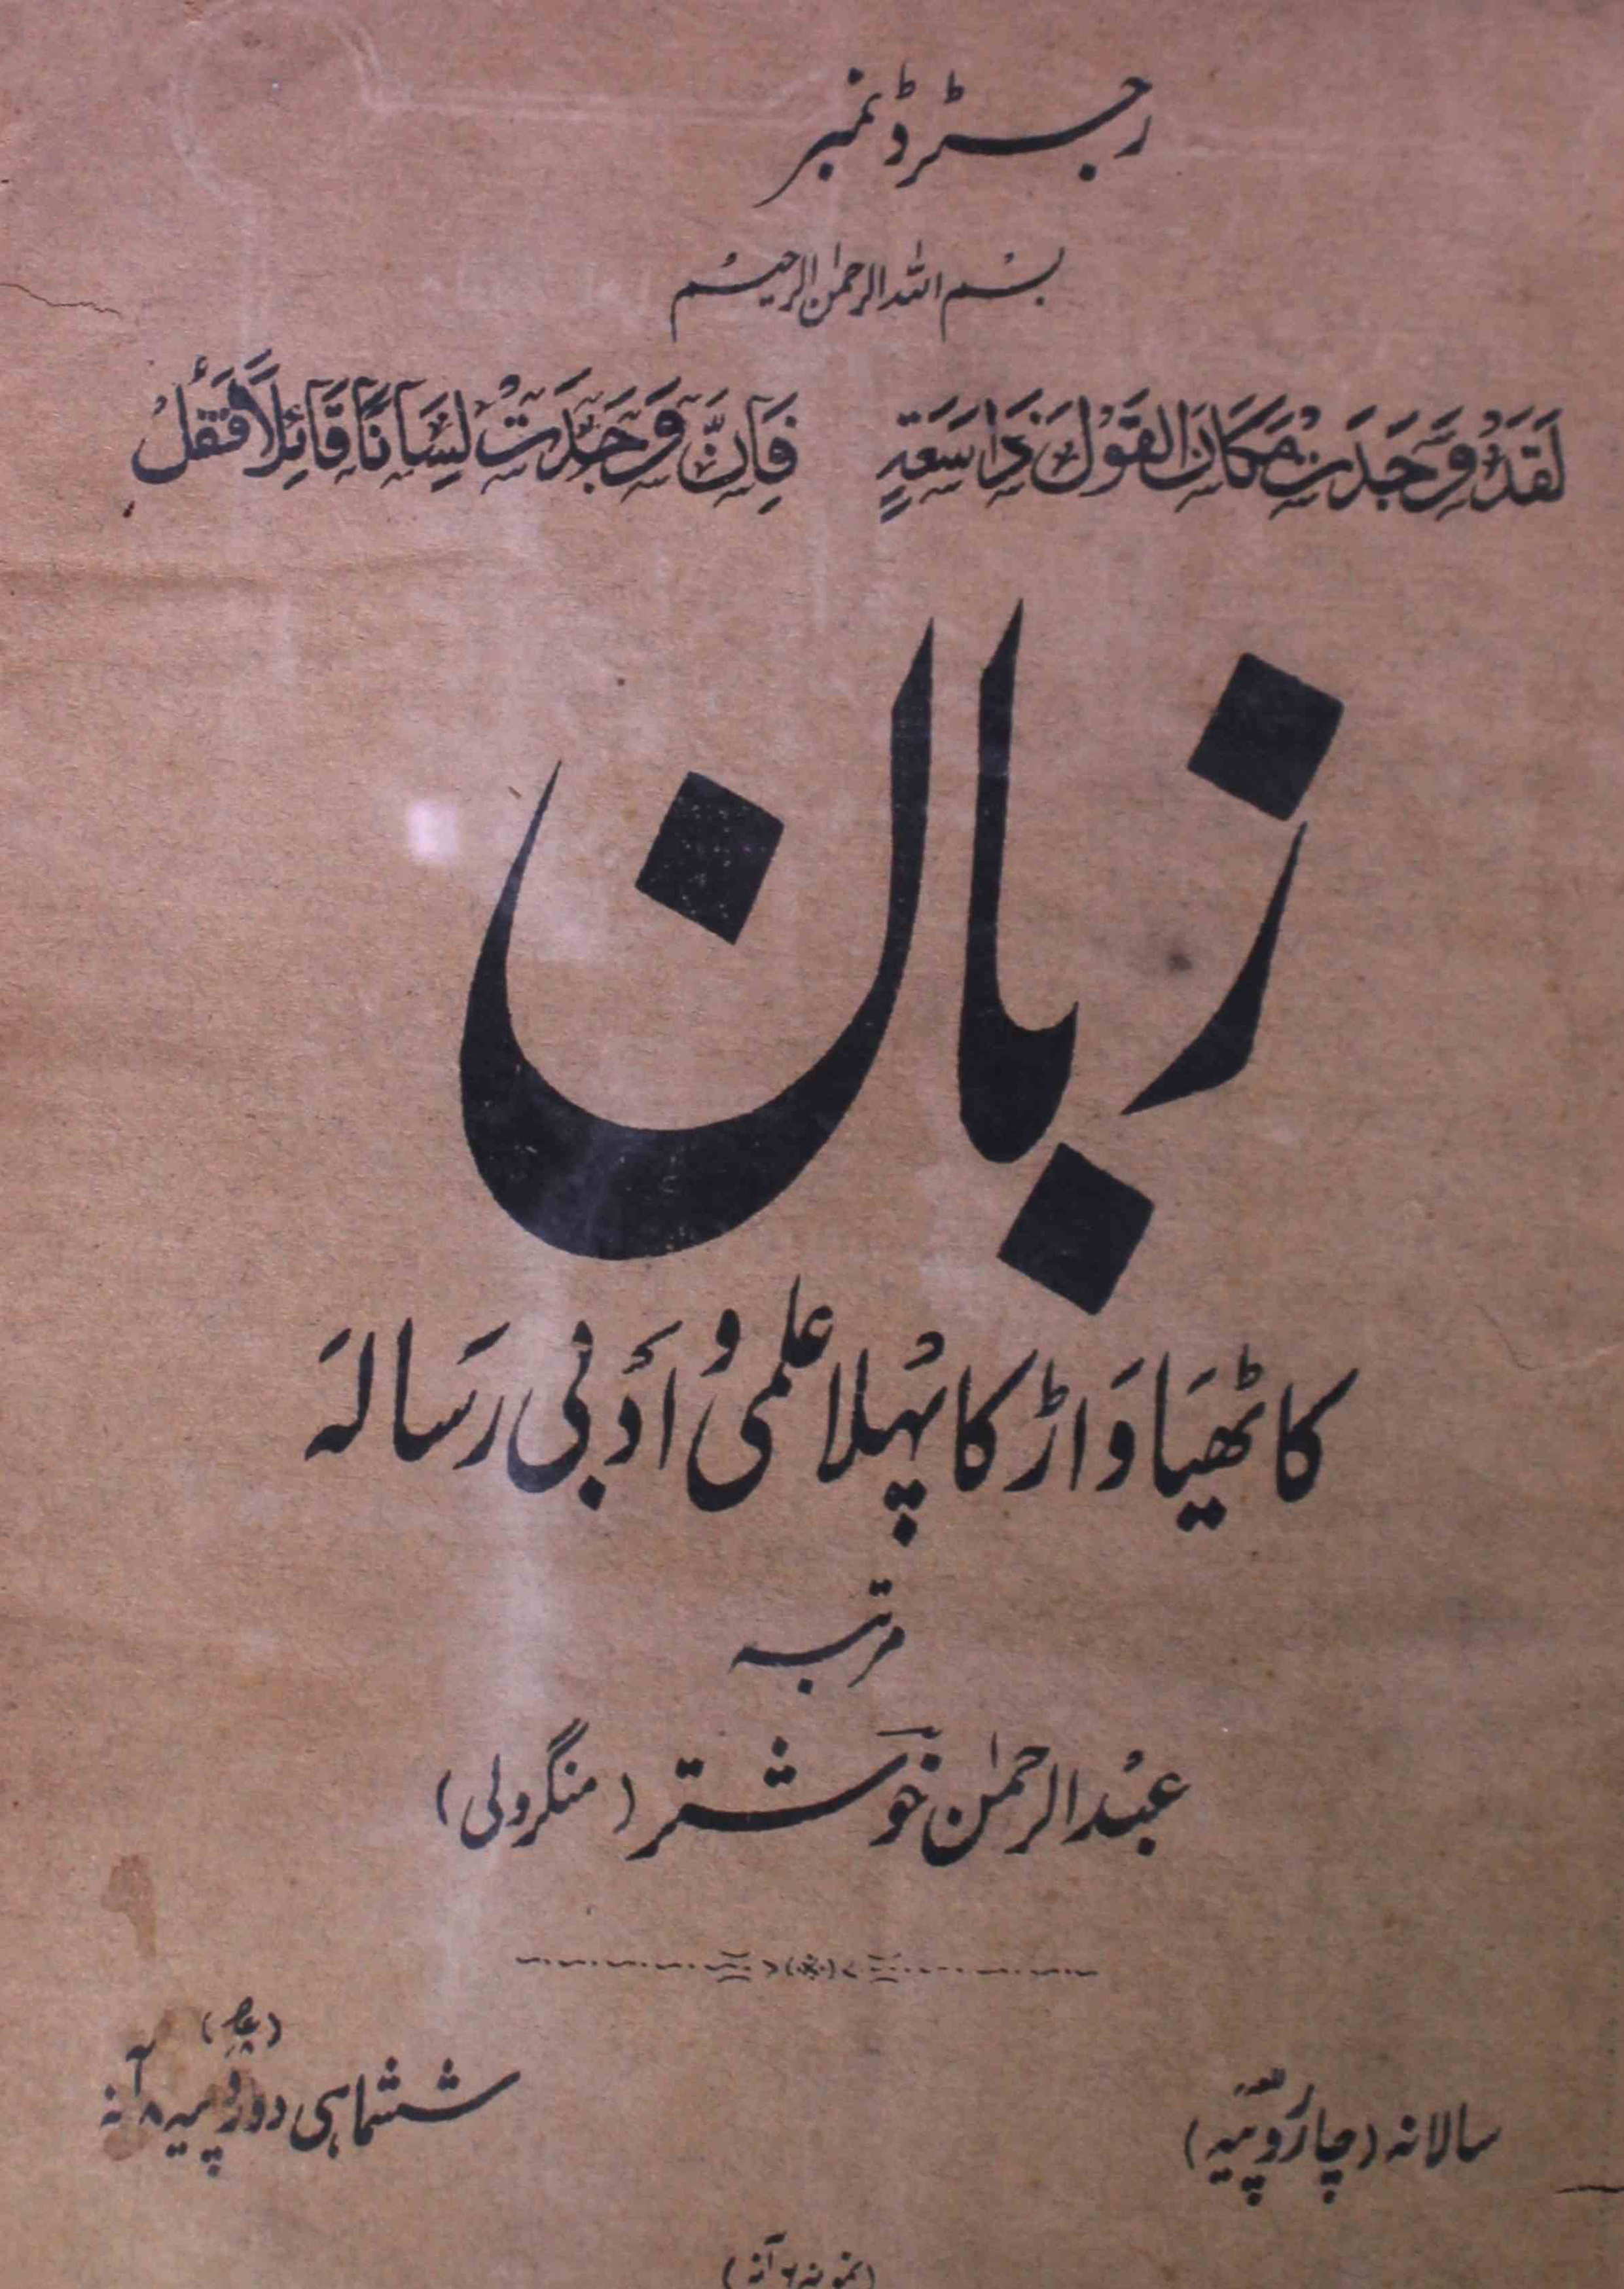 zaban-shumara-number-002-abdur-rahman-khushtar-mangroli-magazines-1